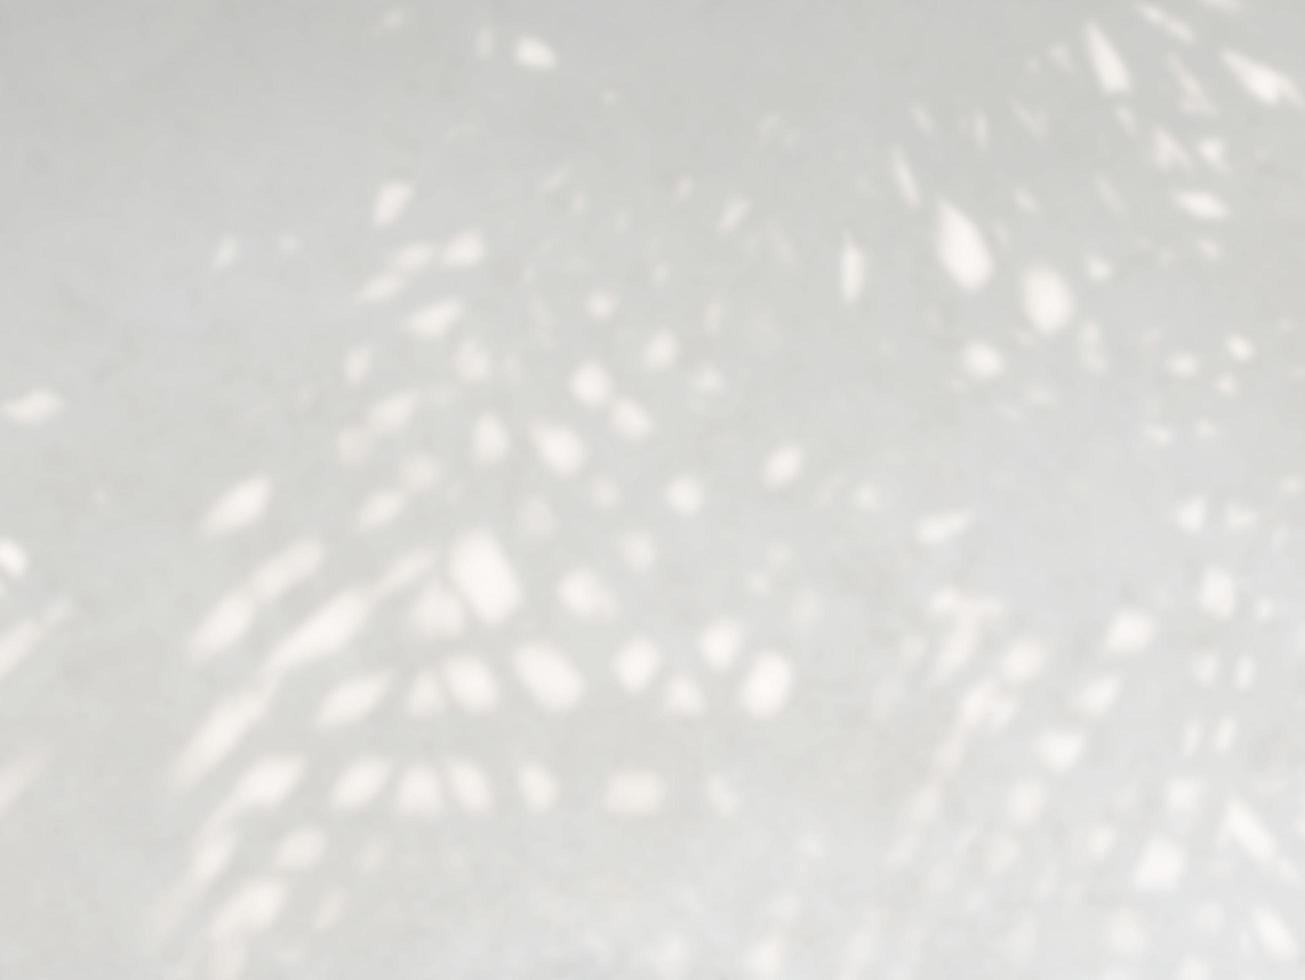 abstrakt skugga av löv på en vit vägg bakgrund foto